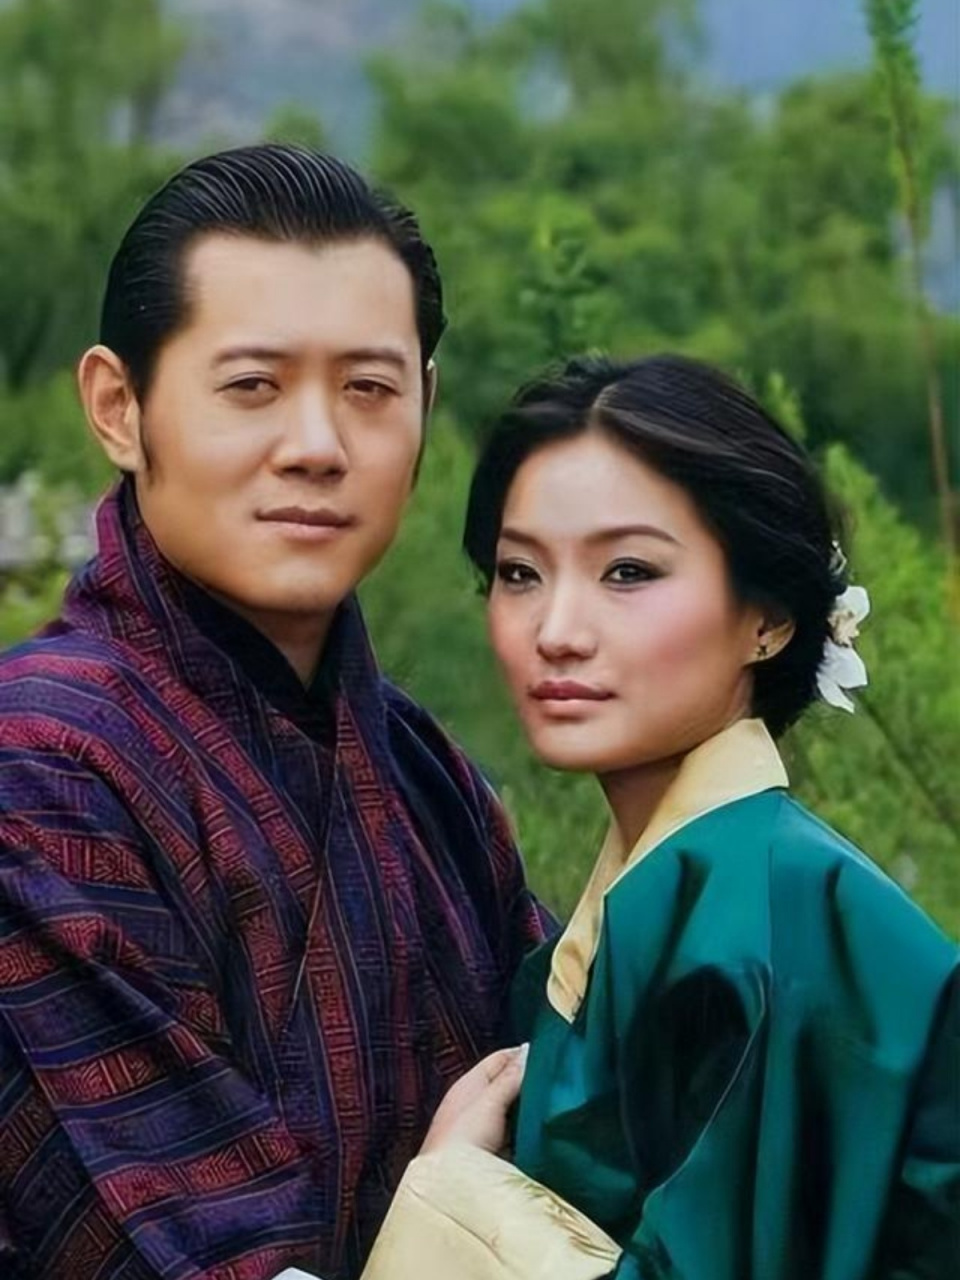 吉增·佩玛,不丹王后,被誉为冰山美人